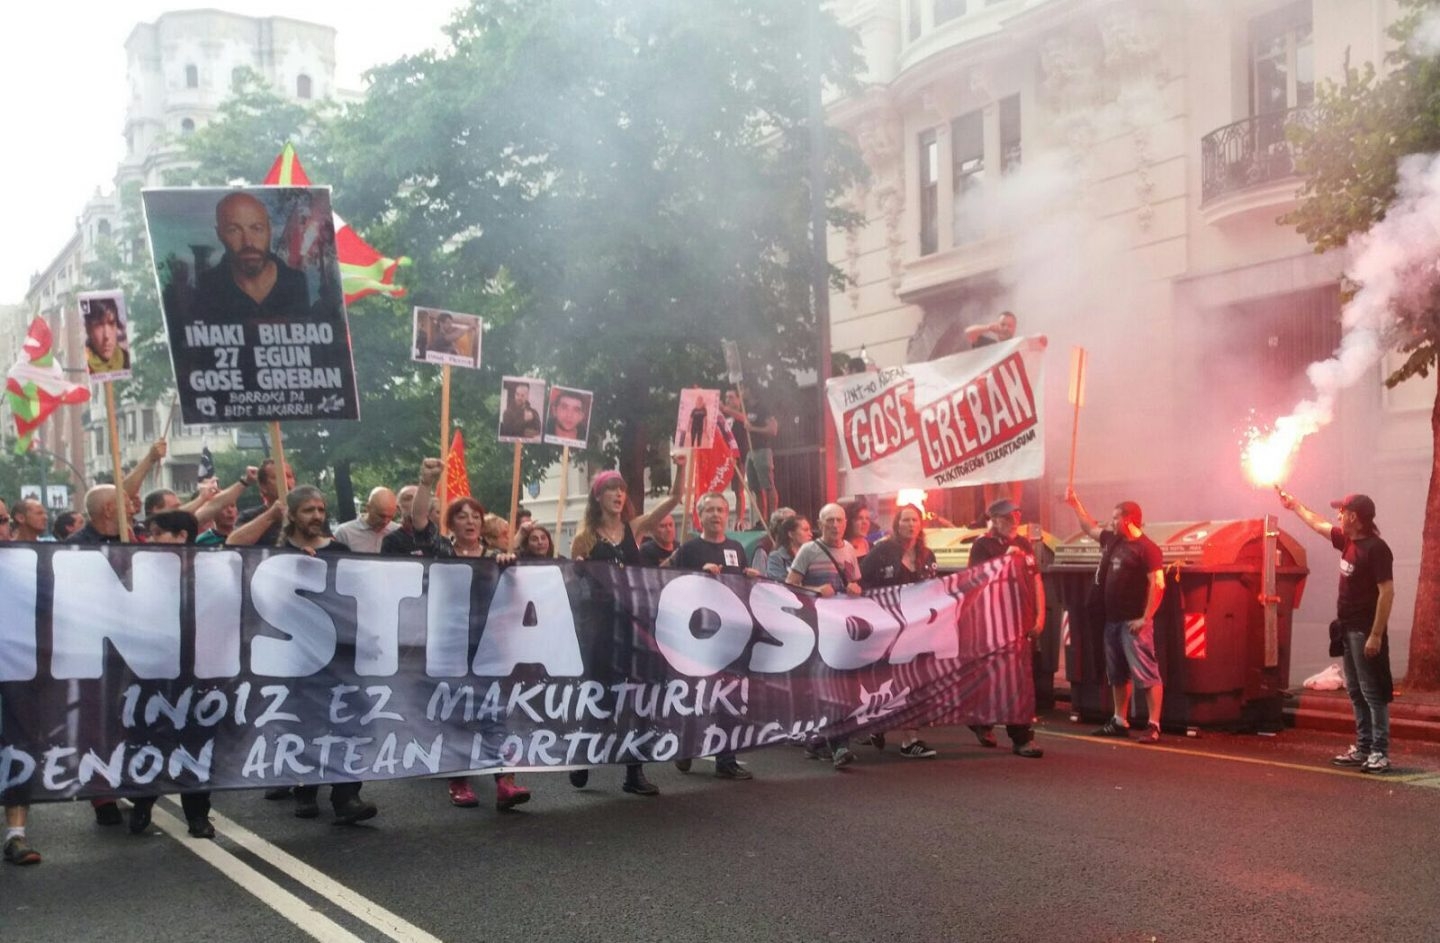 Manifestación en apoyo al preso de ETA, Iñaki Bilbao, celebrada el sábado 24 de junio.